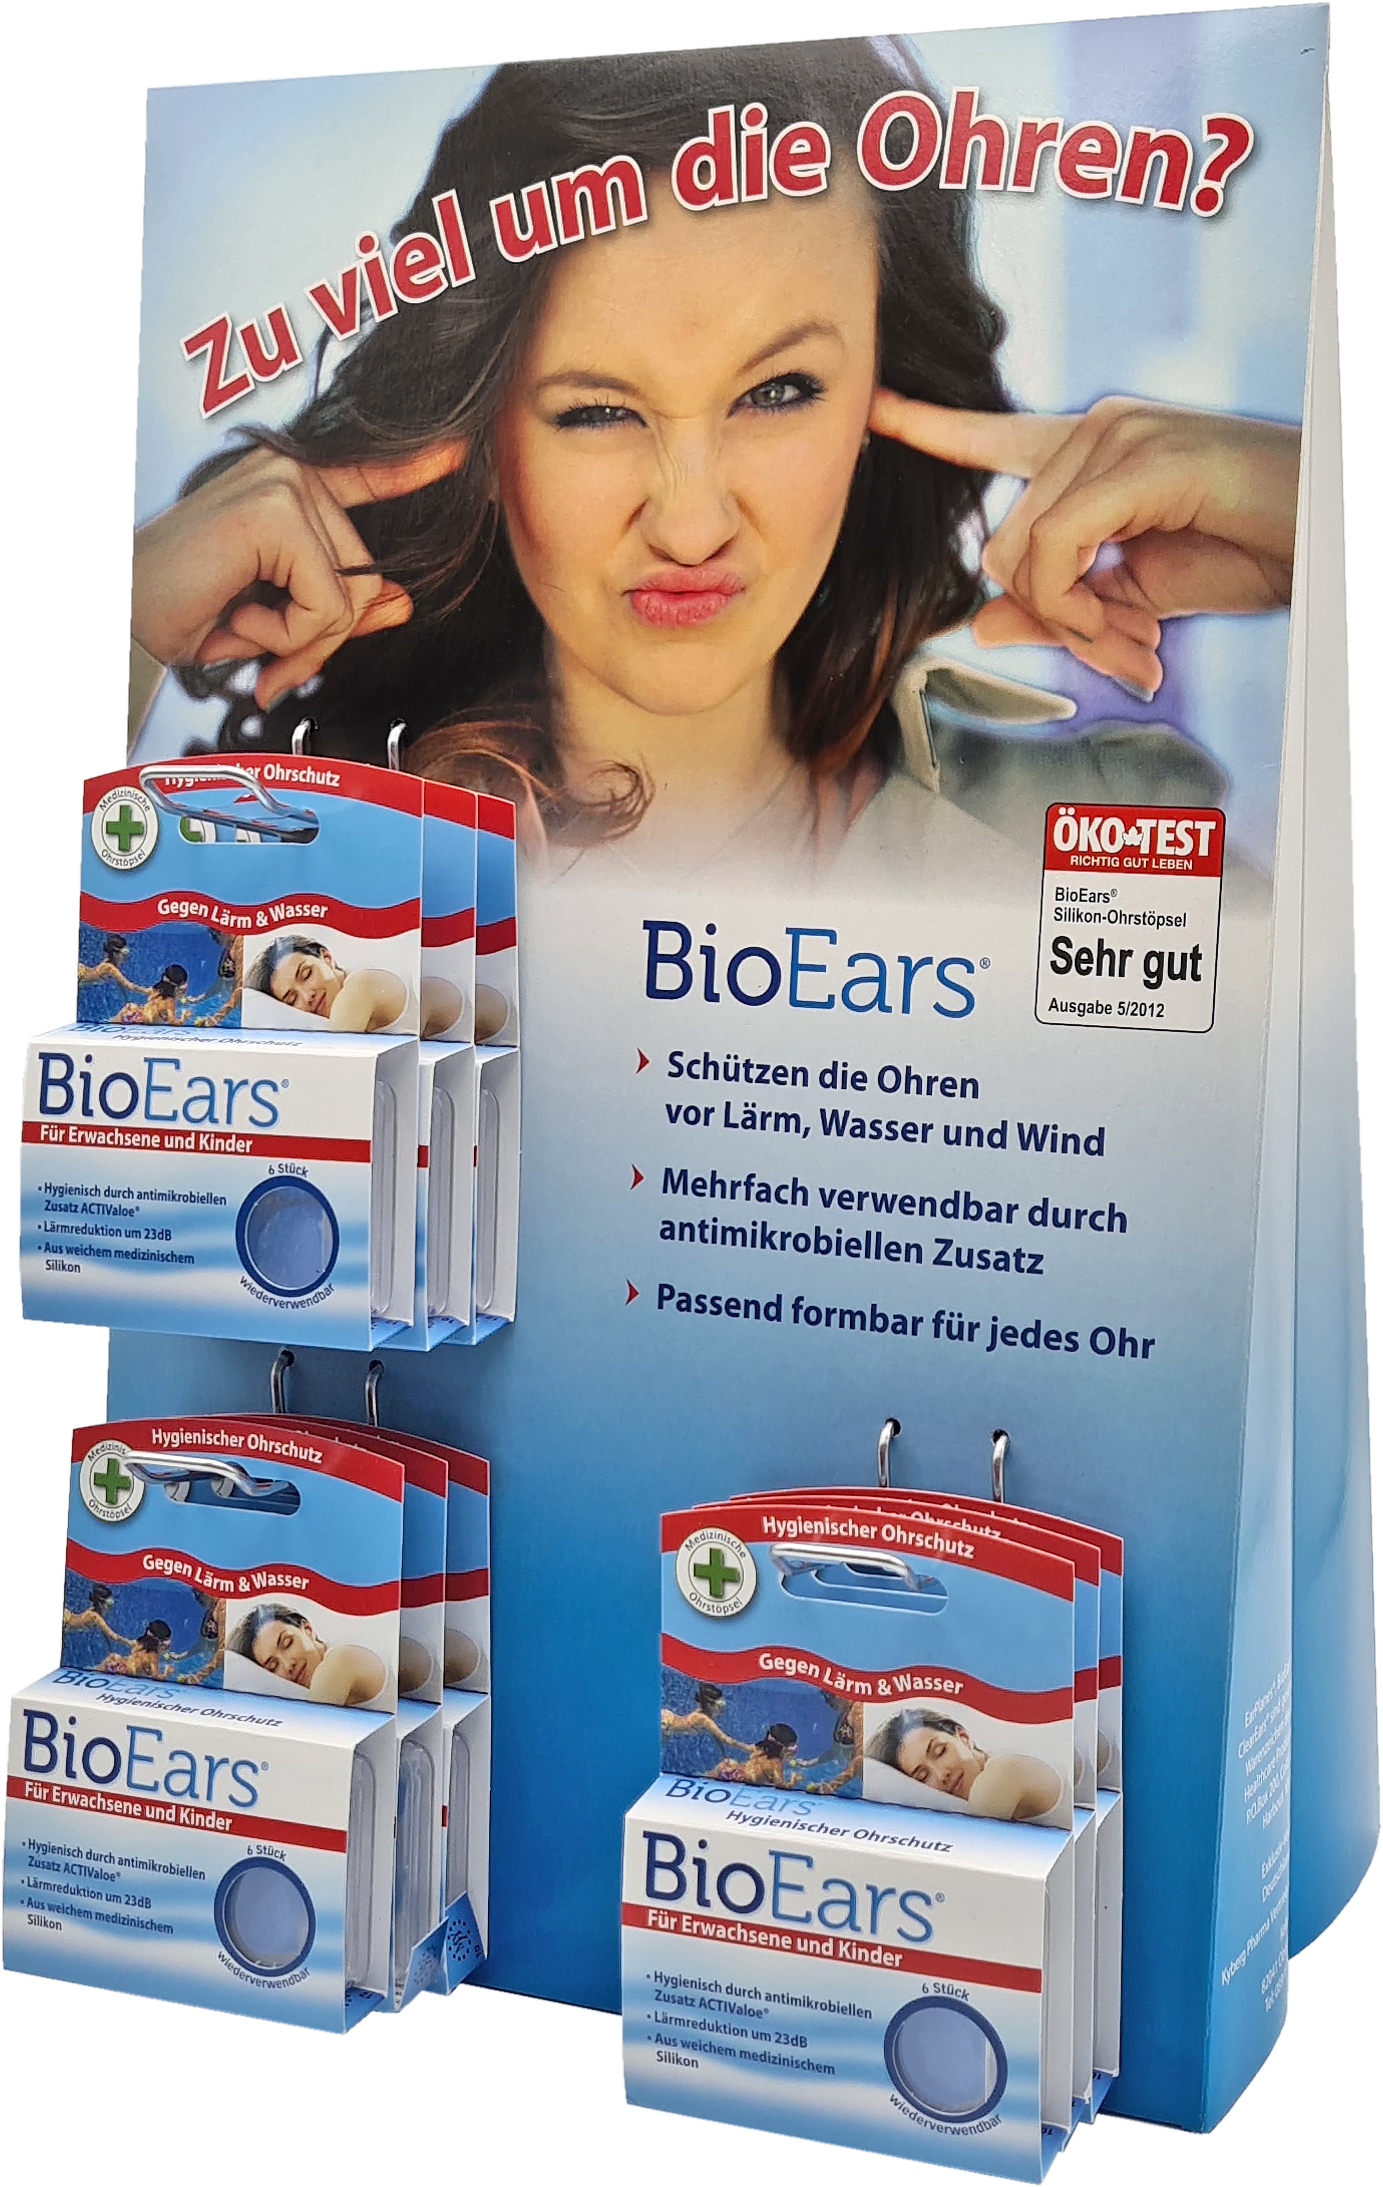 Cirrus BioEars